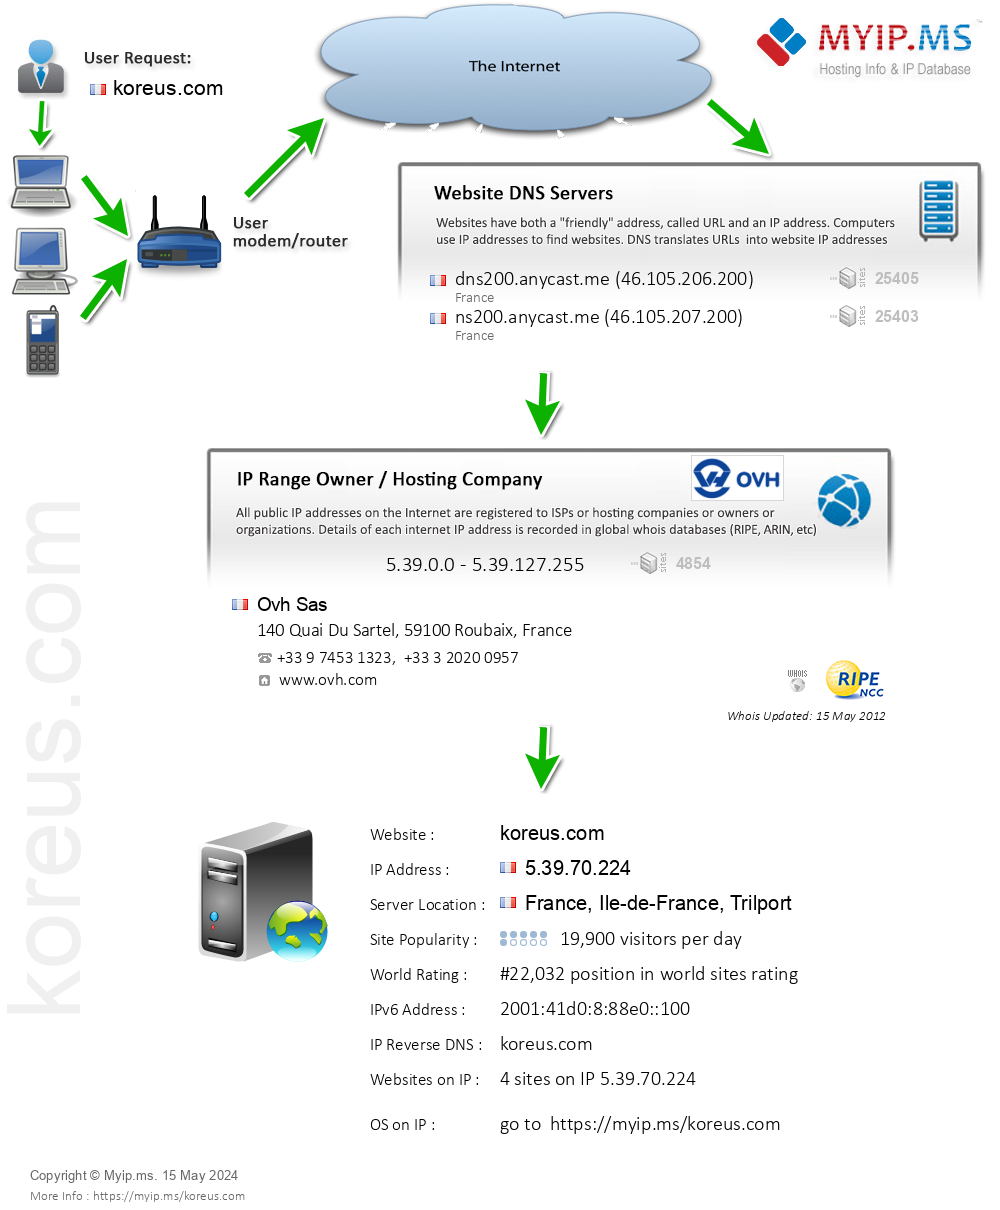 Koreus.com - Website Hosting Visual IP Diagram